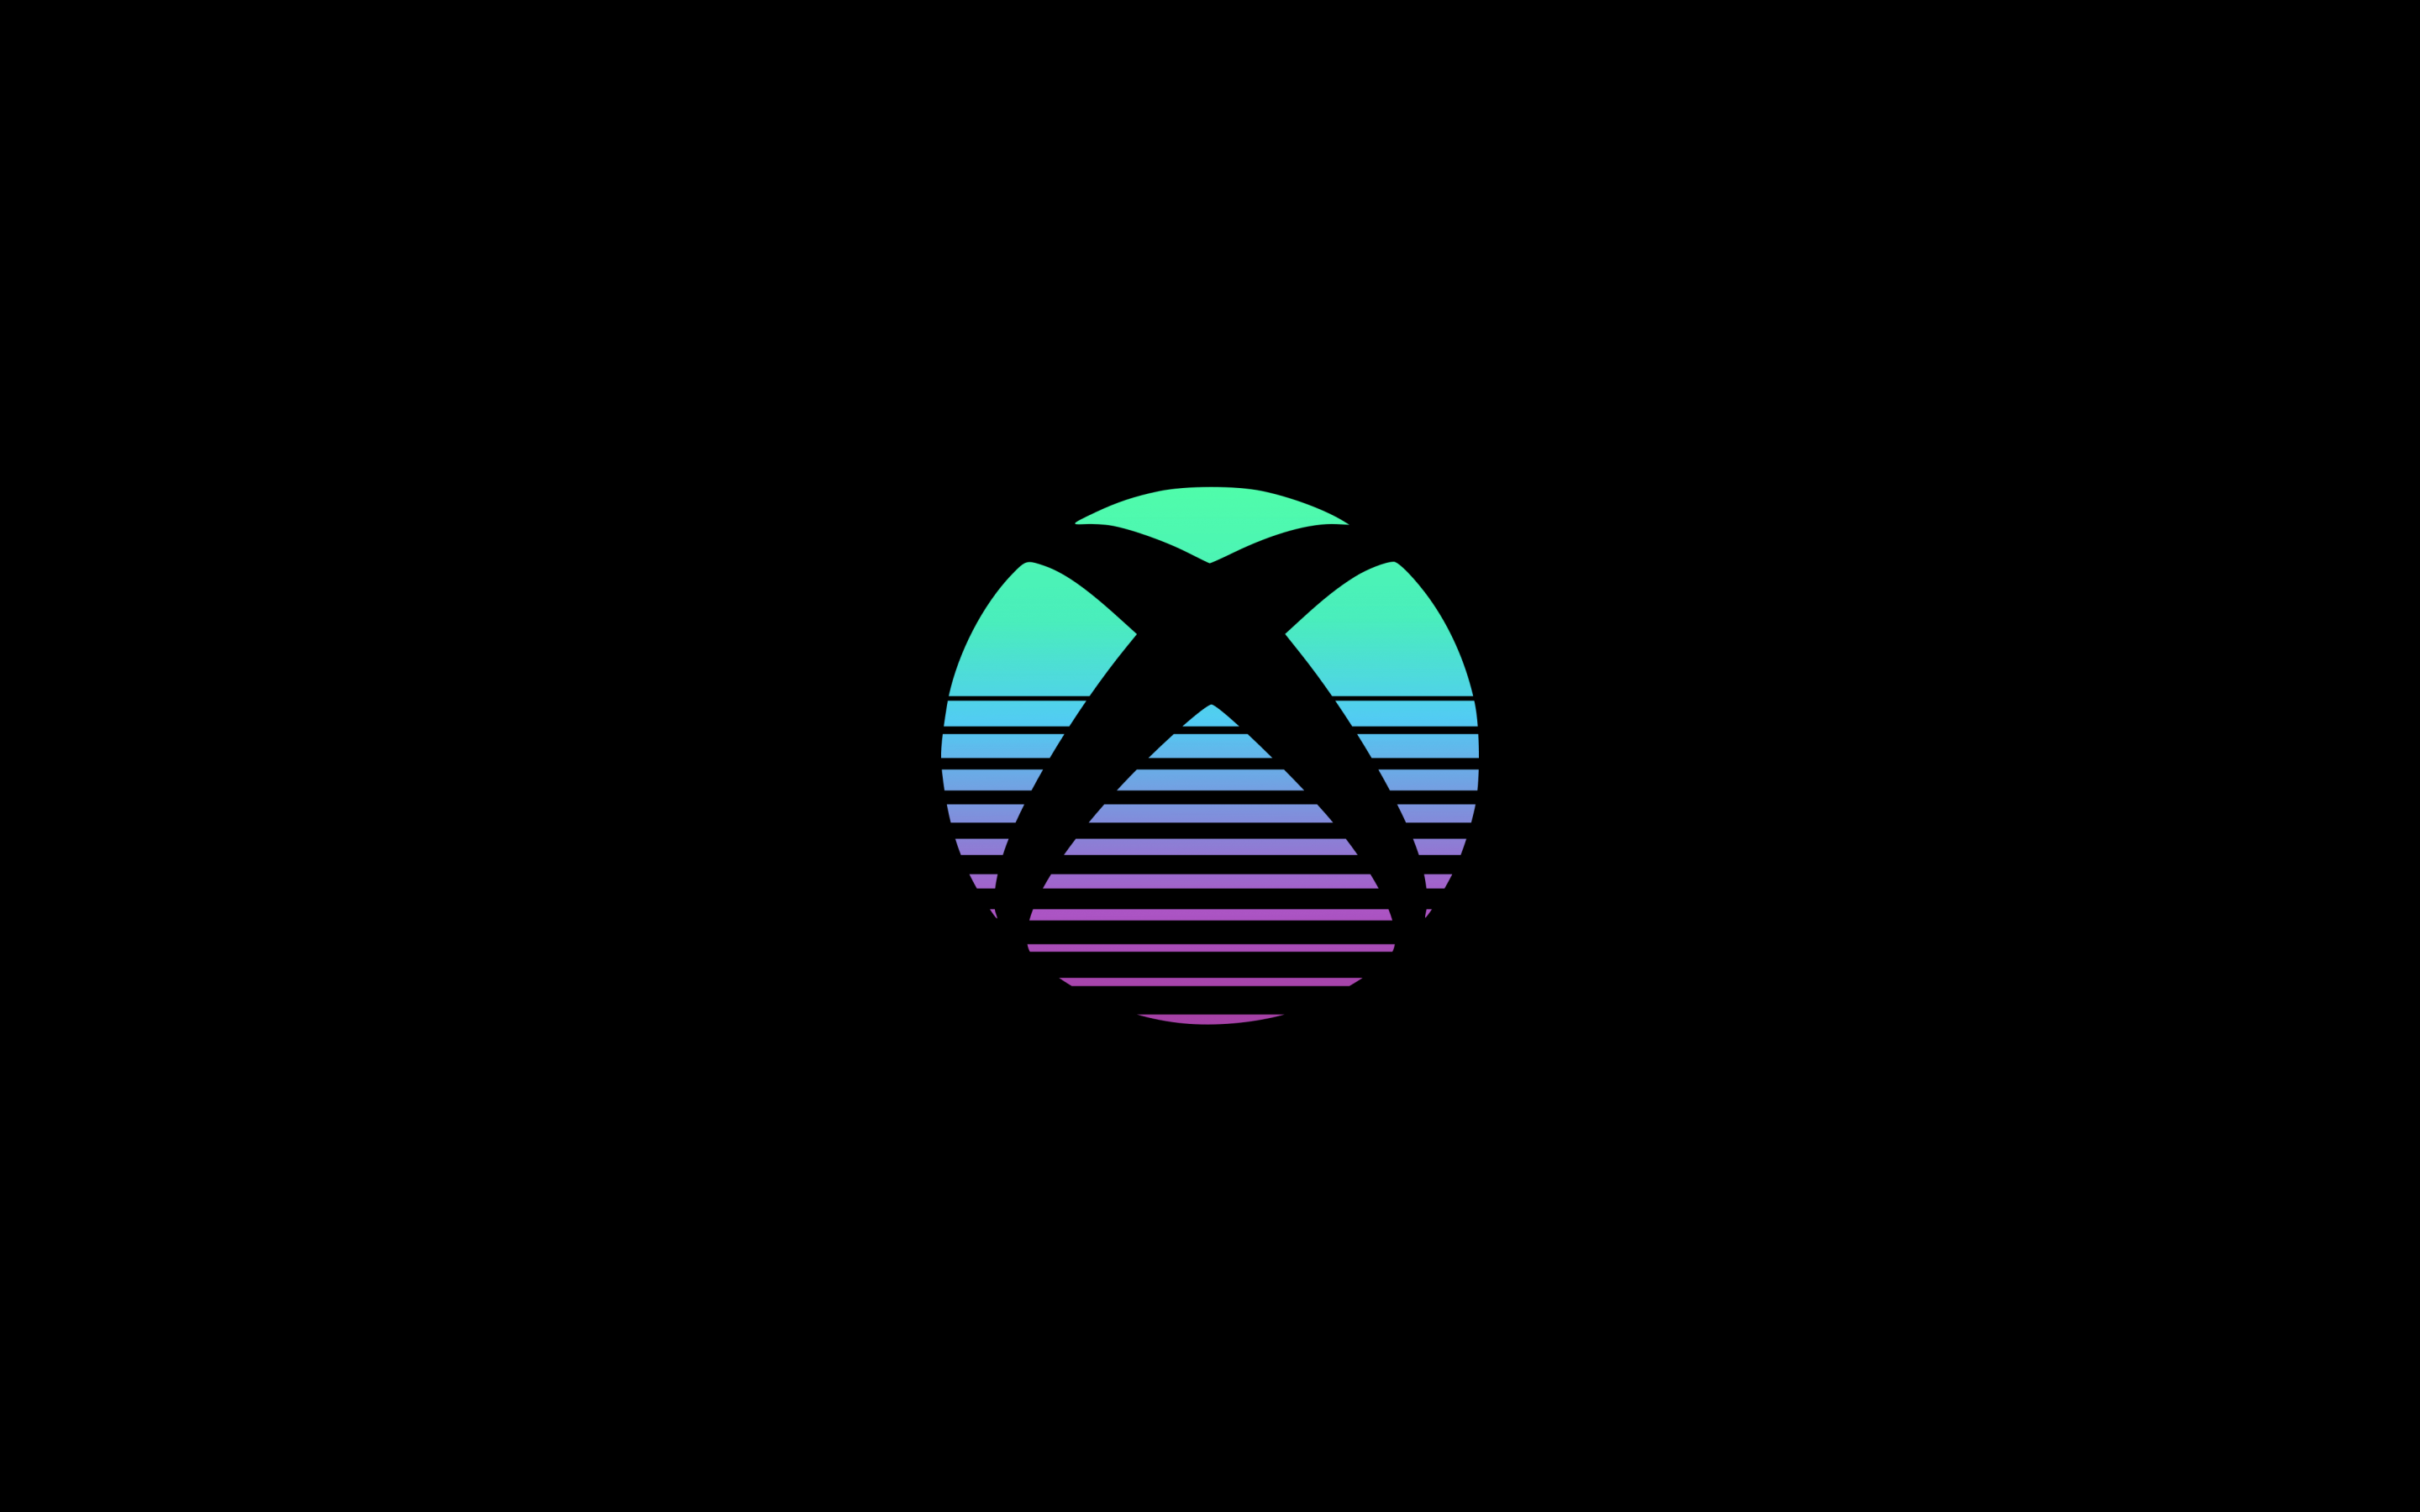 Xbox logo wallpaper là lựa chọn tuyệt vời để thể hiện tình yêu và sự kết nối mạnh mẽ với thương hiệu Xbox. Hãy đón xem những bức ảnh nền chất lượng cao, tạo nên phong cách game đích thực và truyền tải thông điệp đầy ý nghĩa.